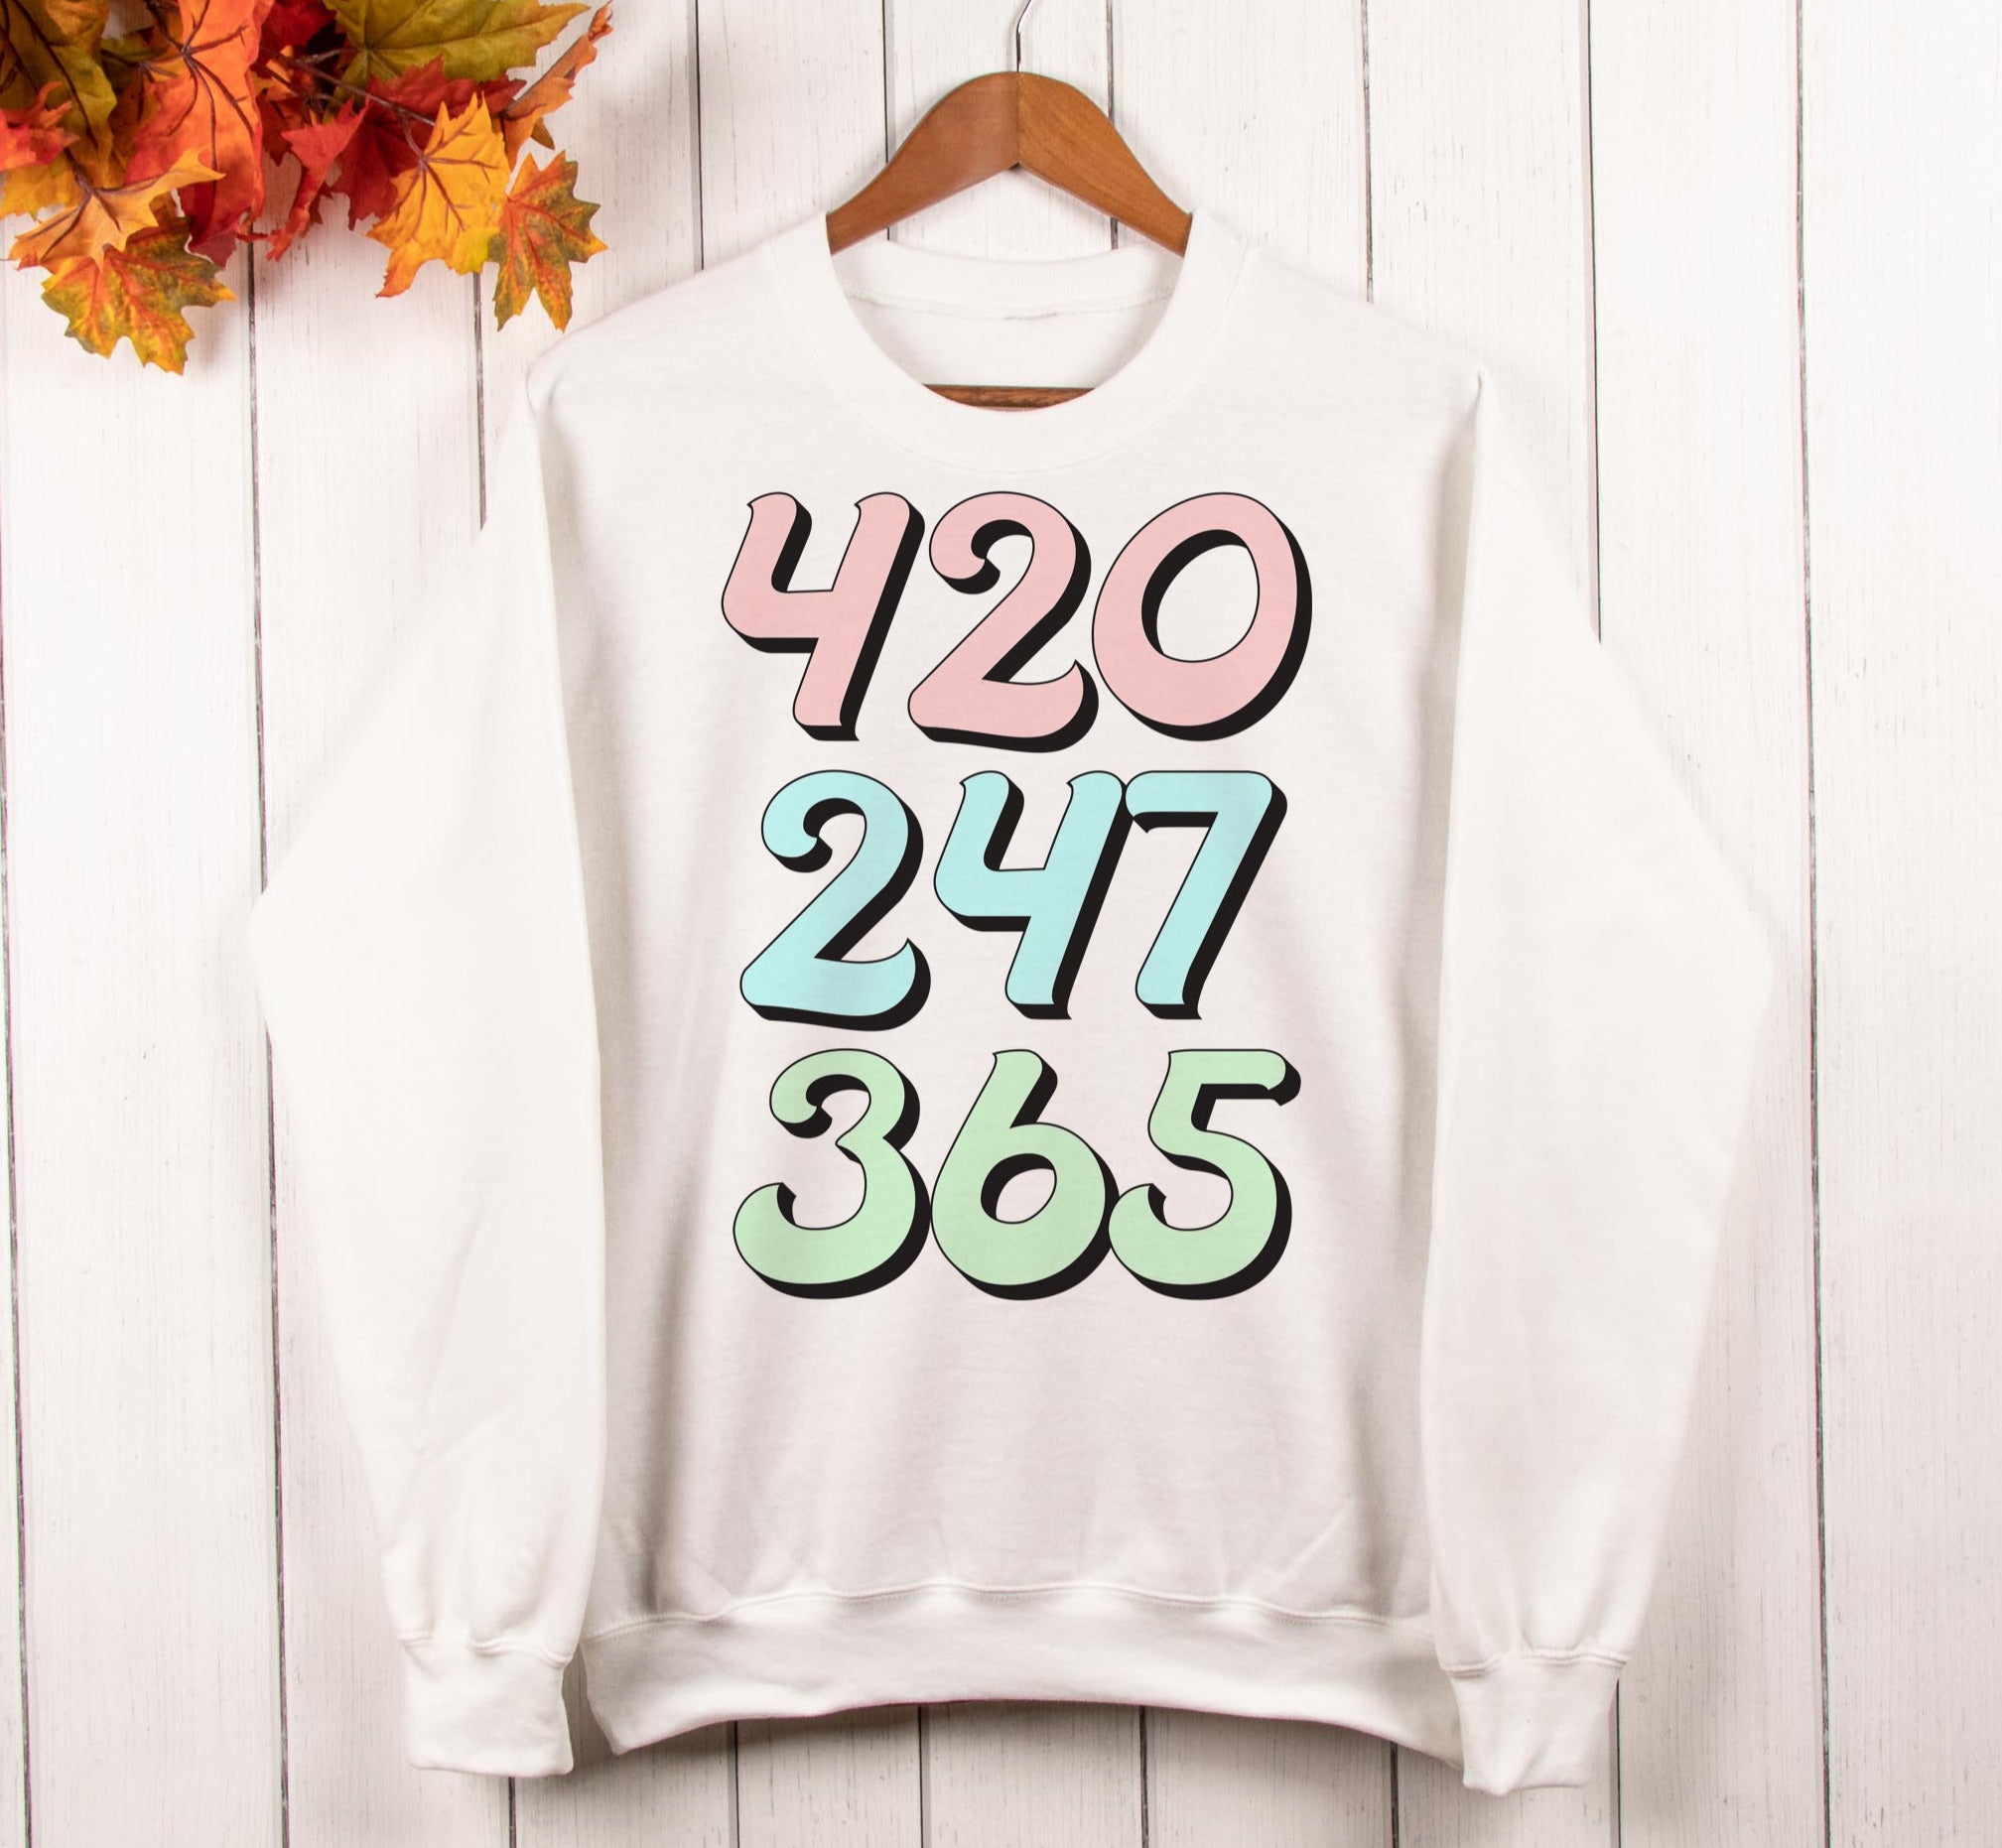 stoner sweatshirt that says 420 247 365 - HighCiti